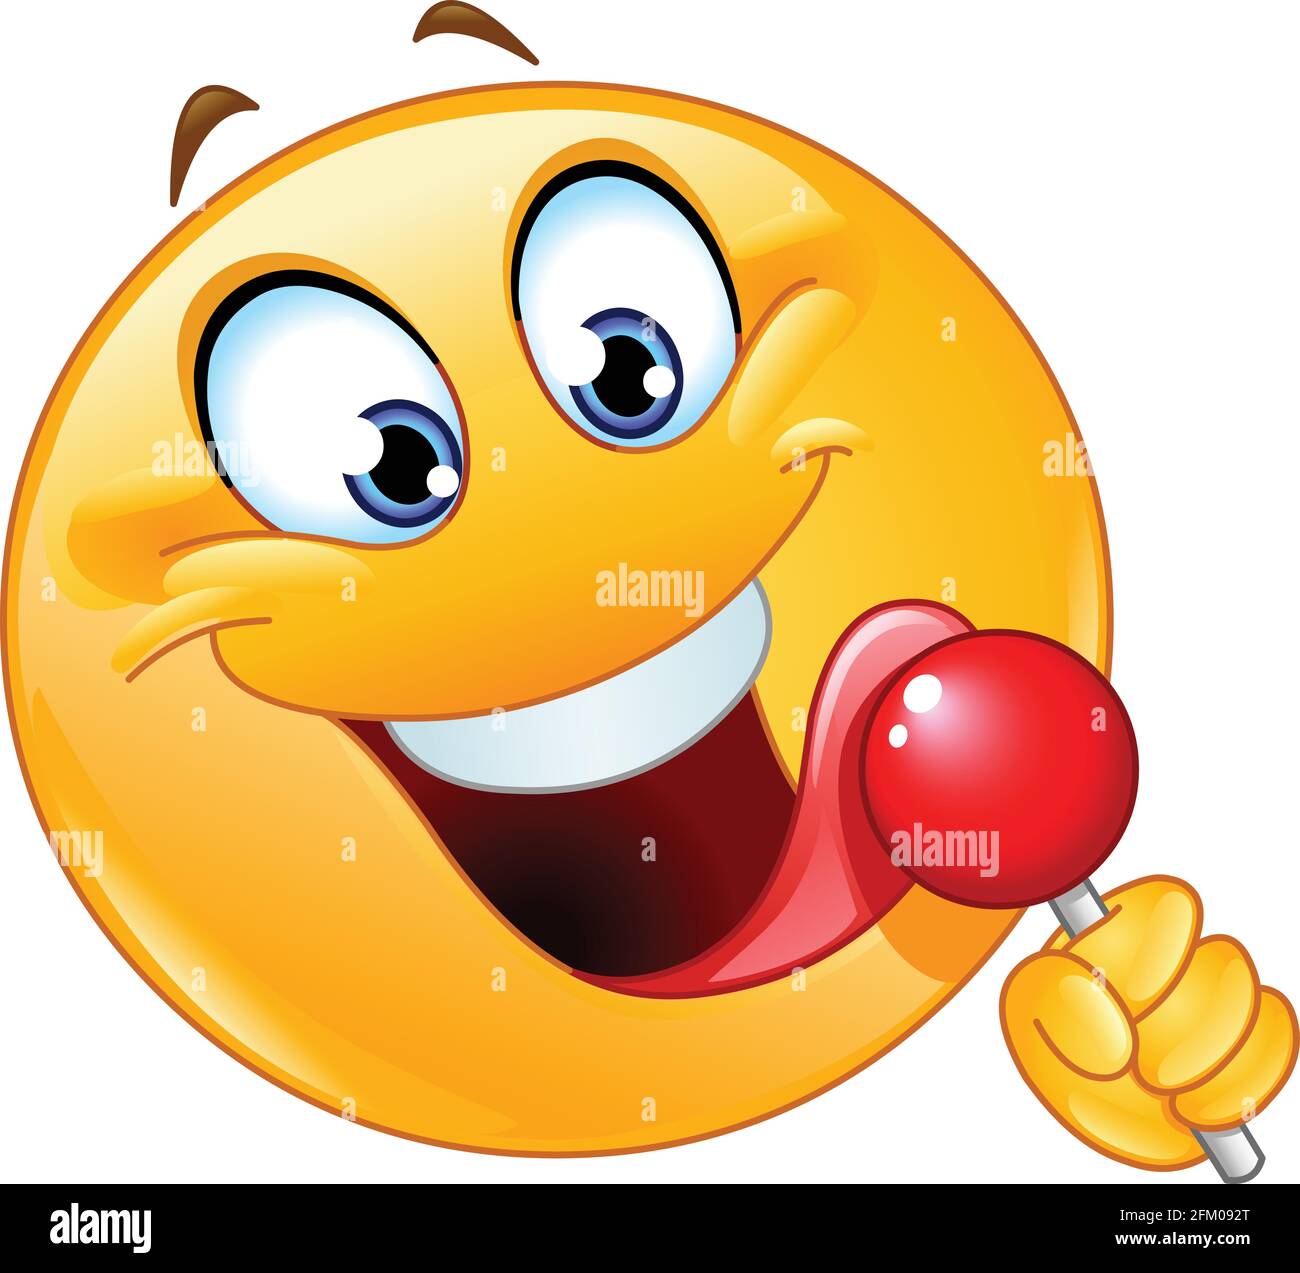 Happy emoji emoticon licking a red lollipop Stock Vector